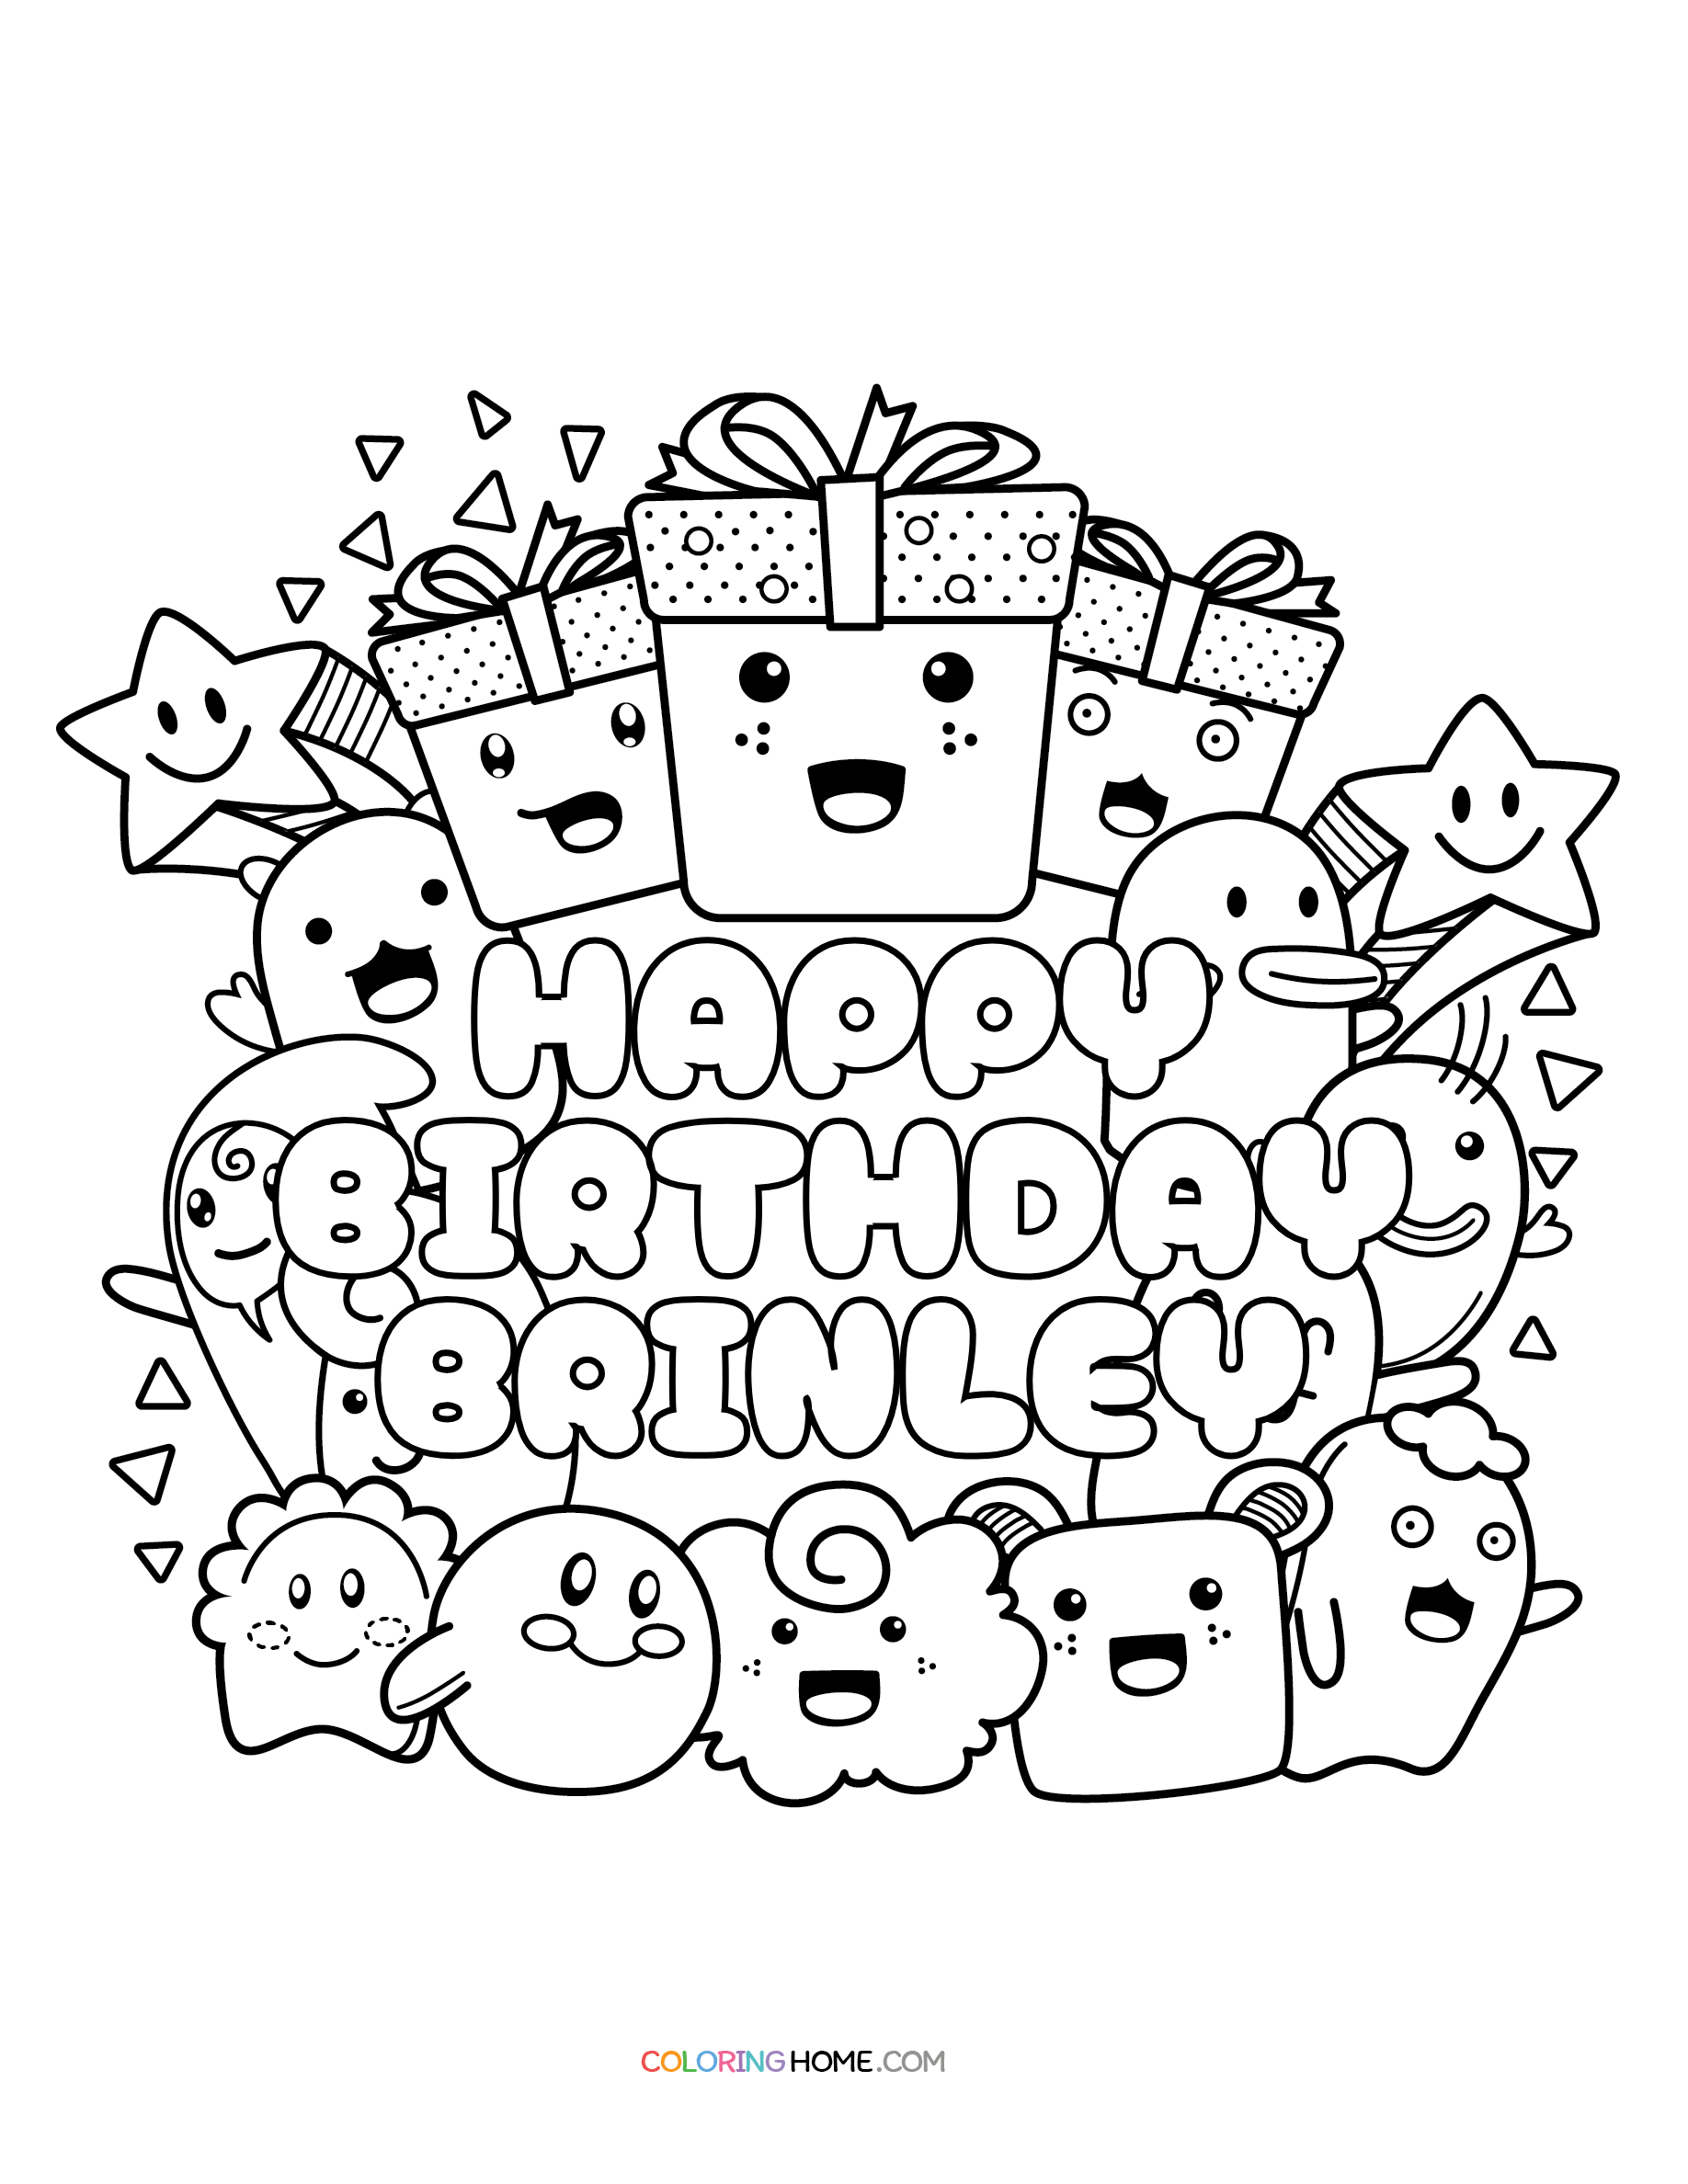 Happy Birthday Brinley coloring page